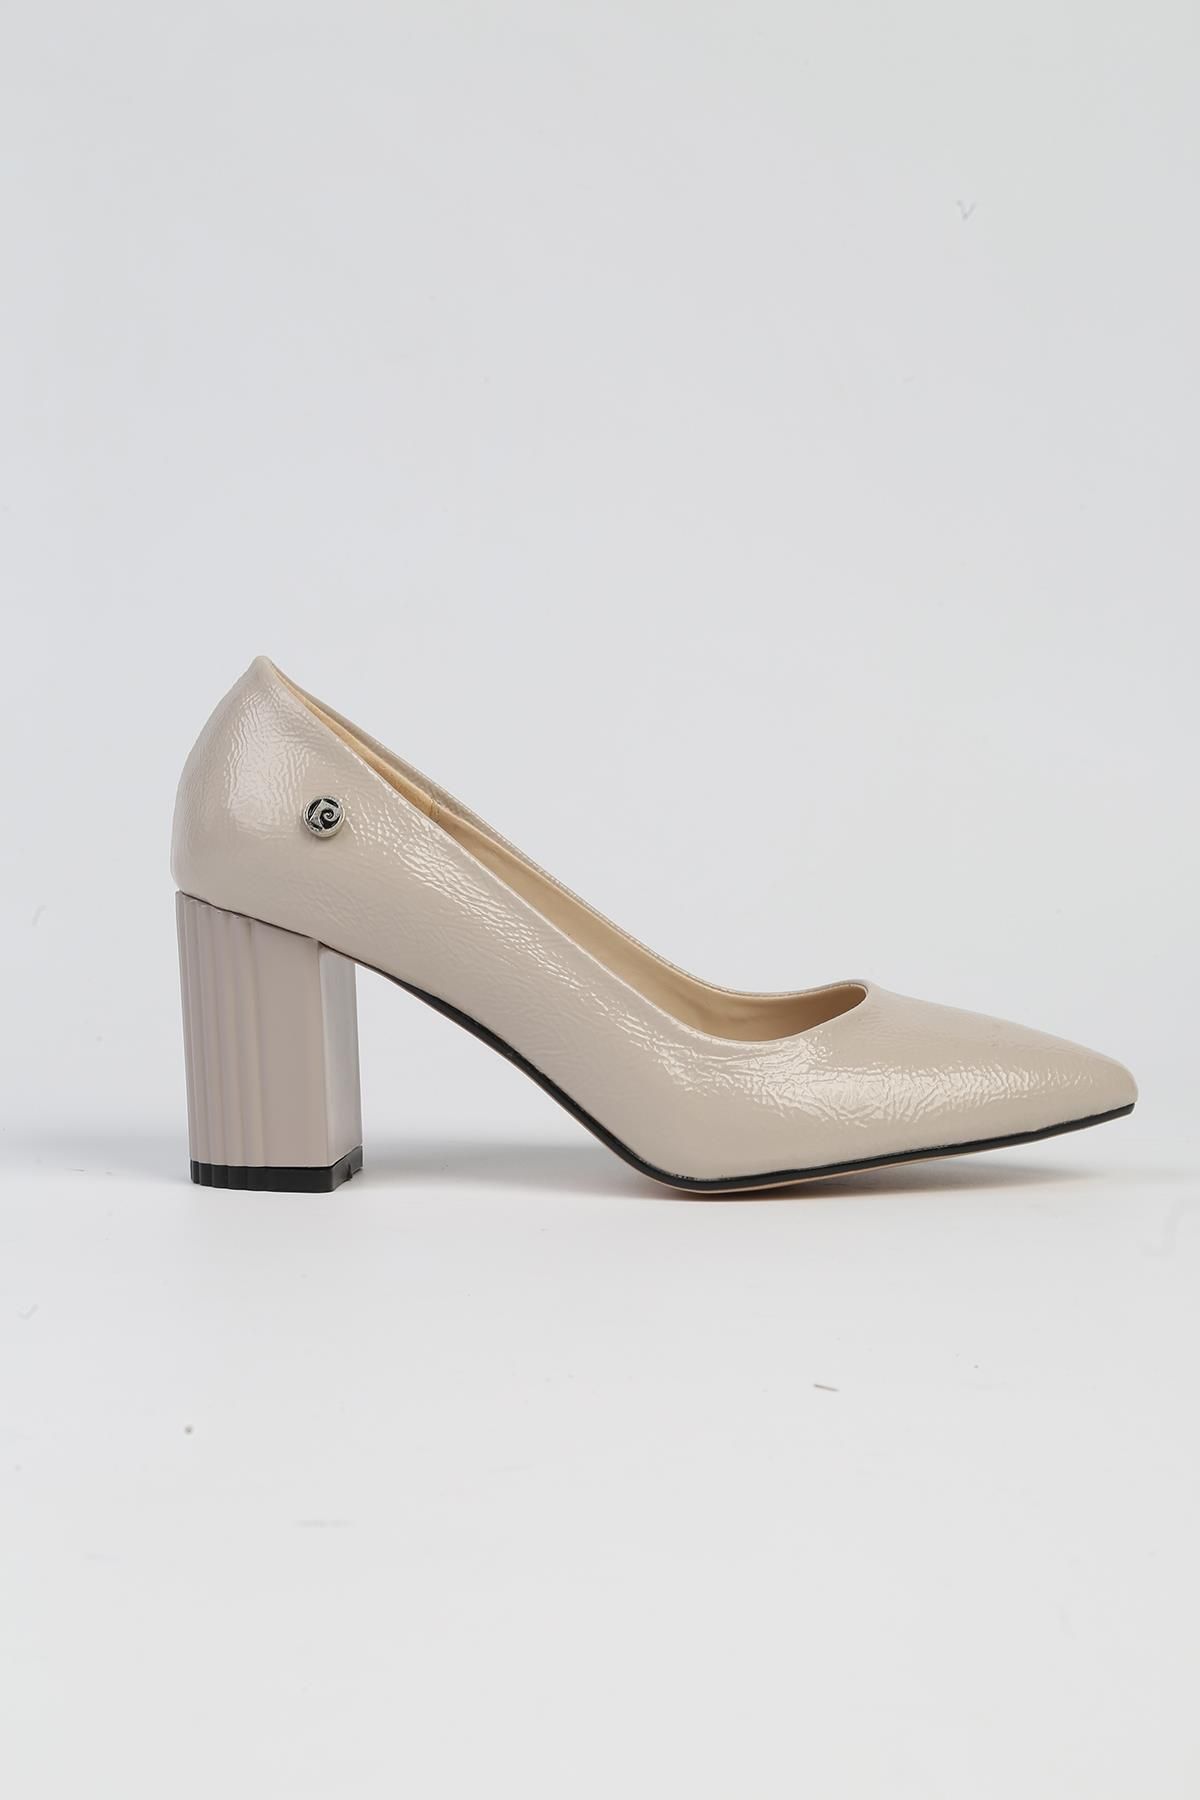 Pierre Cardin ® | PC-52574 - 3478 Bej Kırışık - Kadın Topuklu Ayakkabı